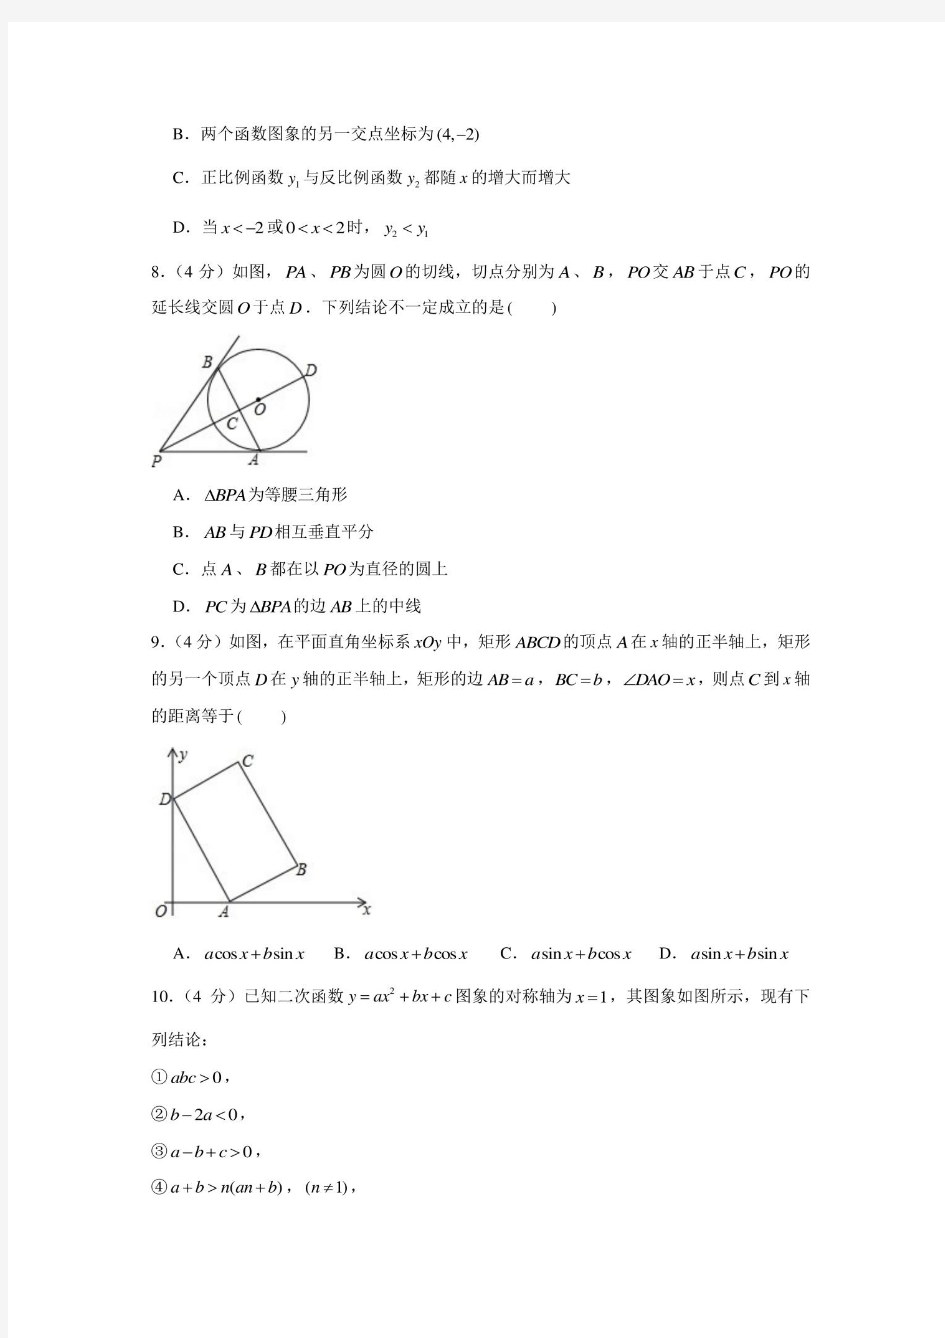 2020年湖南省湘西州中考数学试卷(含答案解析)